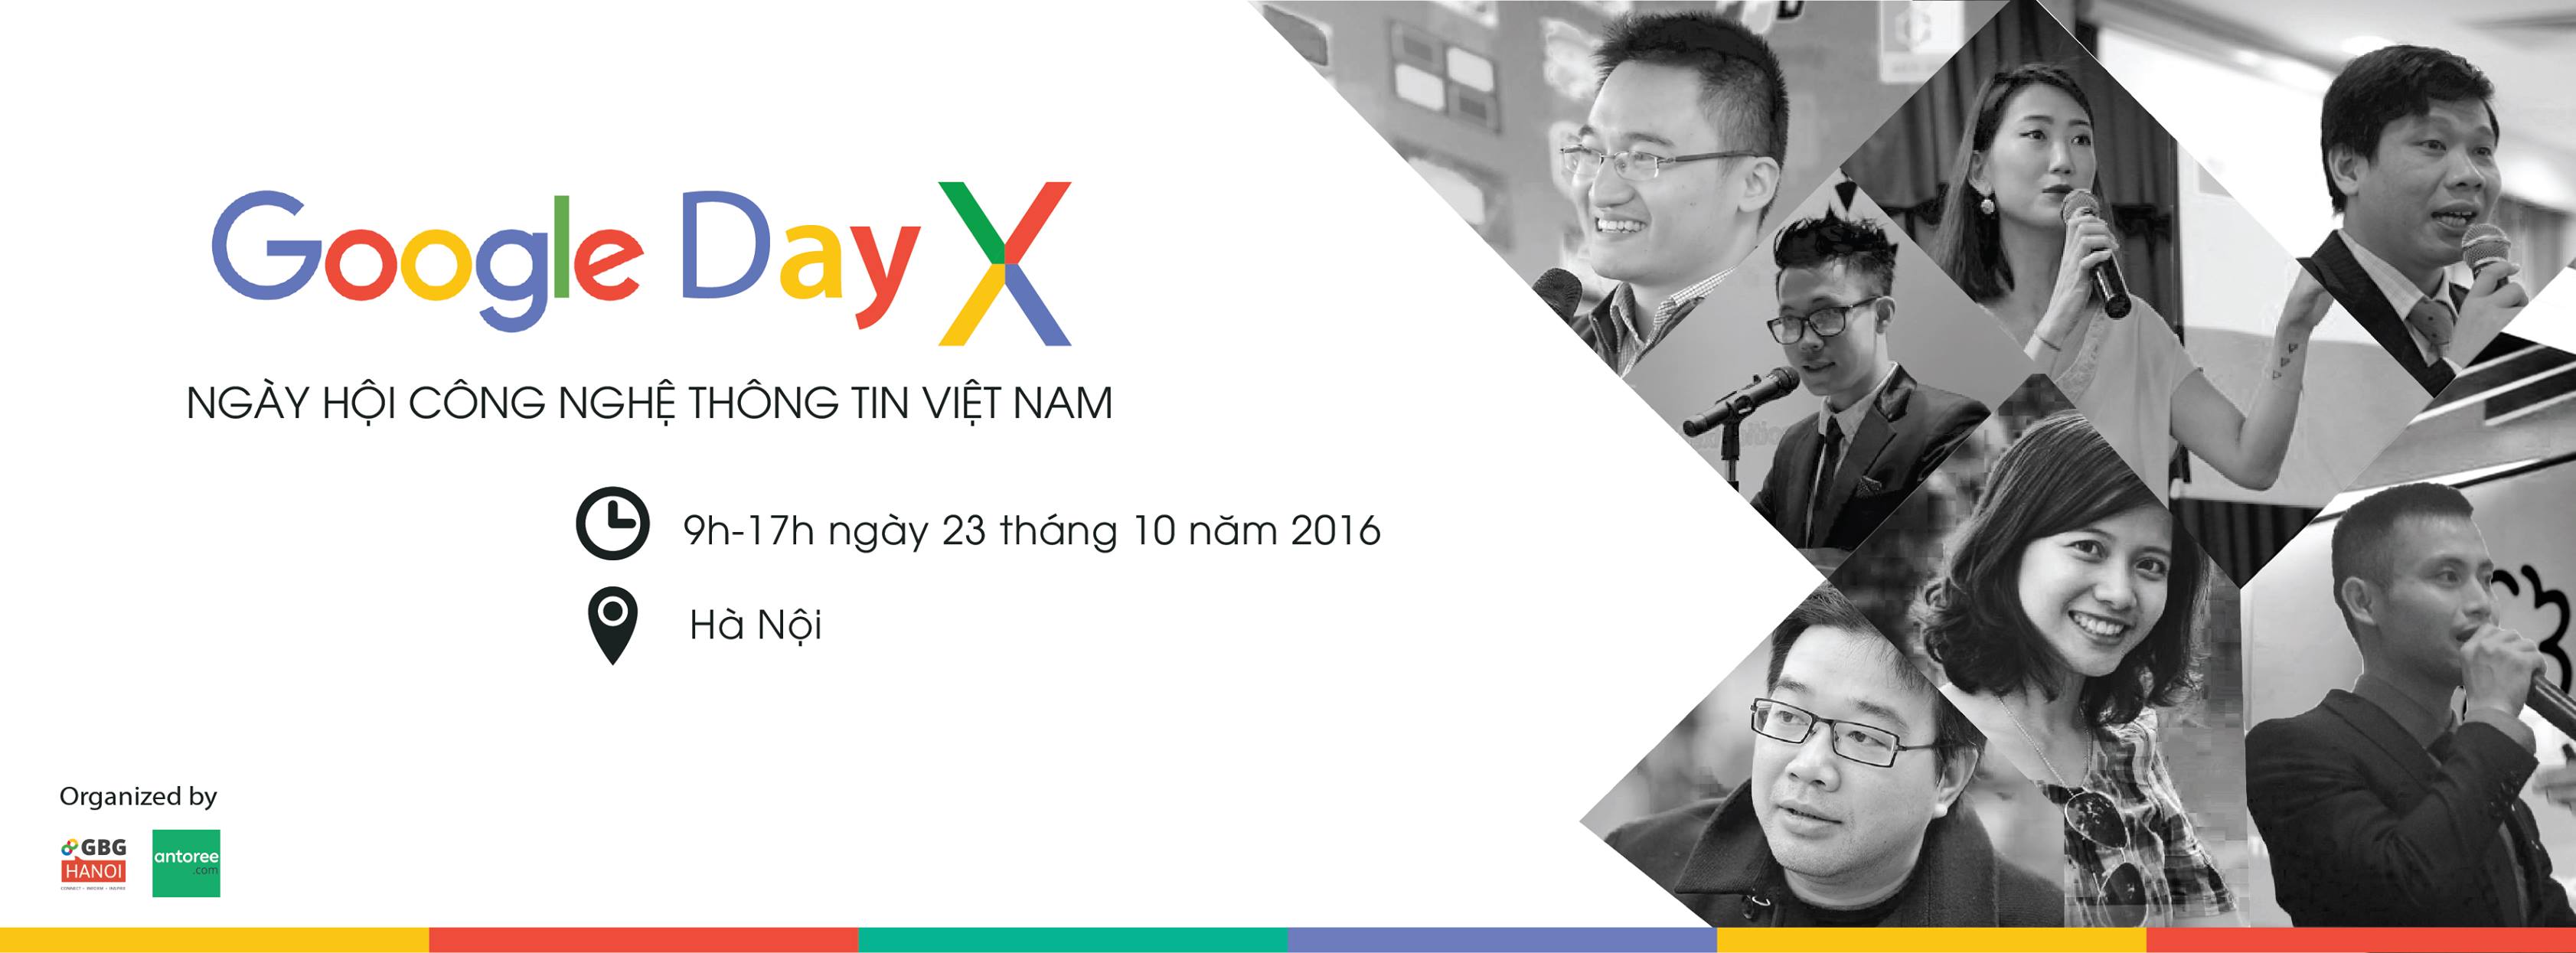 Google Day X Vietnam 2016 – Ngày hội công nghệ lớn nhất 2016